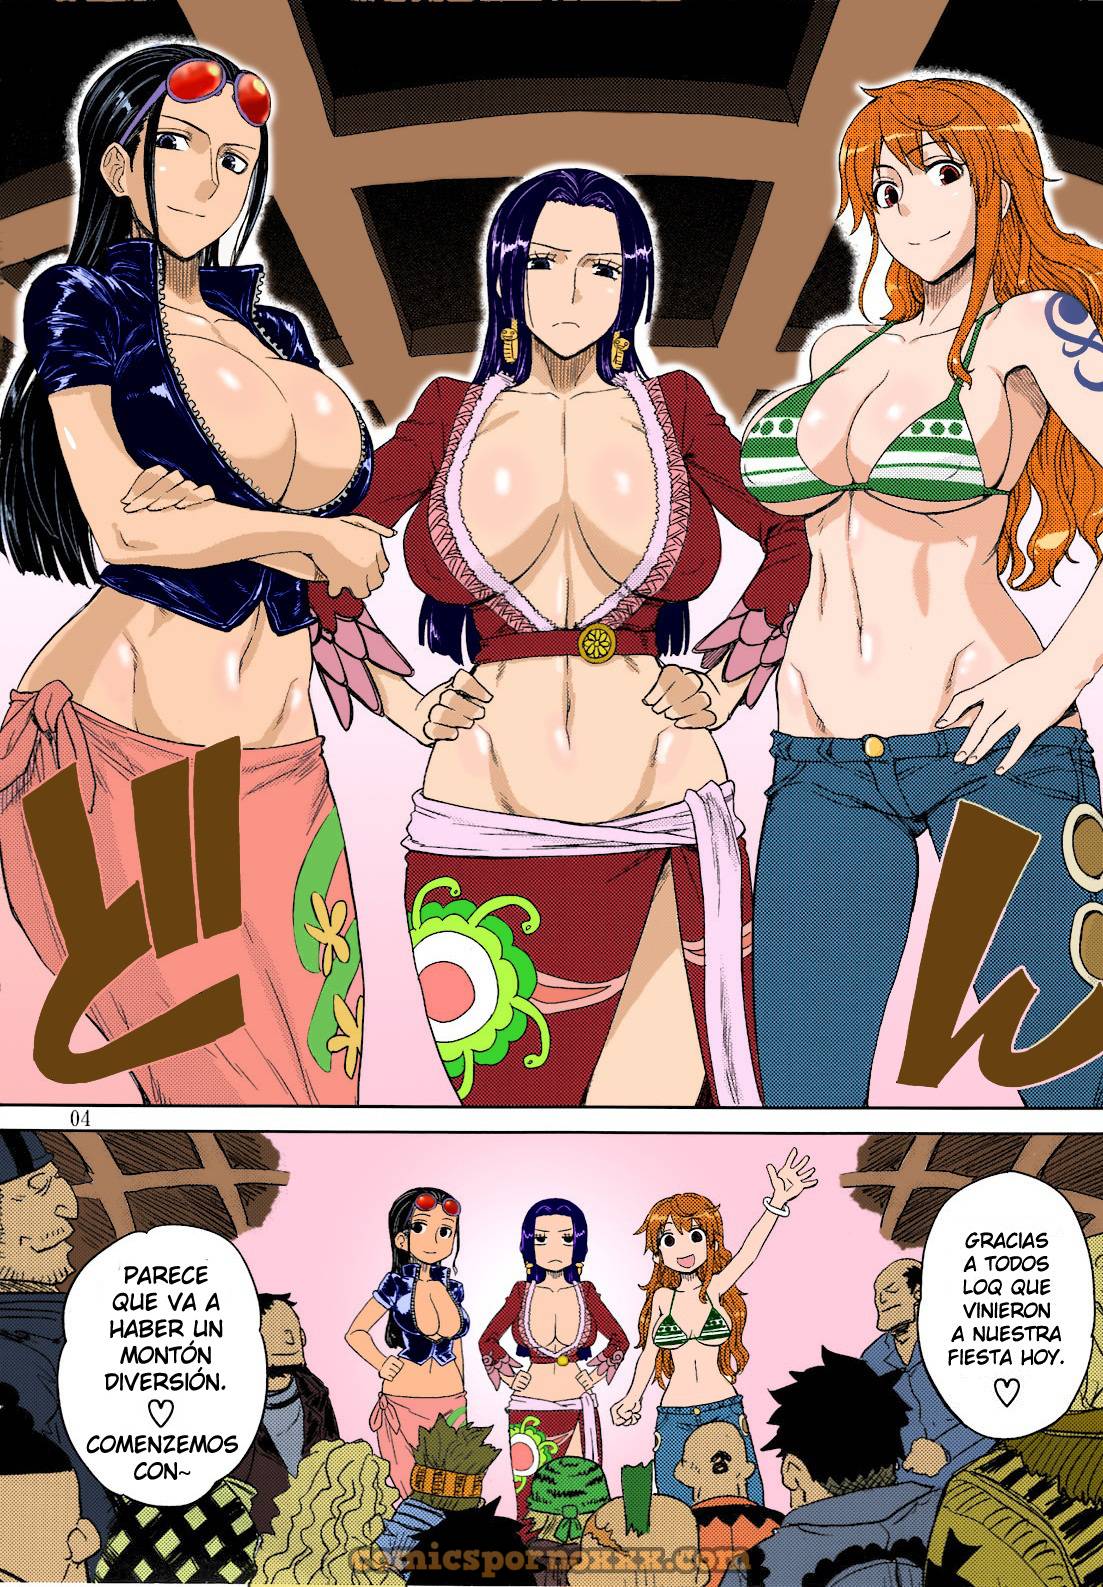 Mero Mero Girls New World  - Imagen 2  - Comics Porno - Hentai Manga - Cartoon XXX